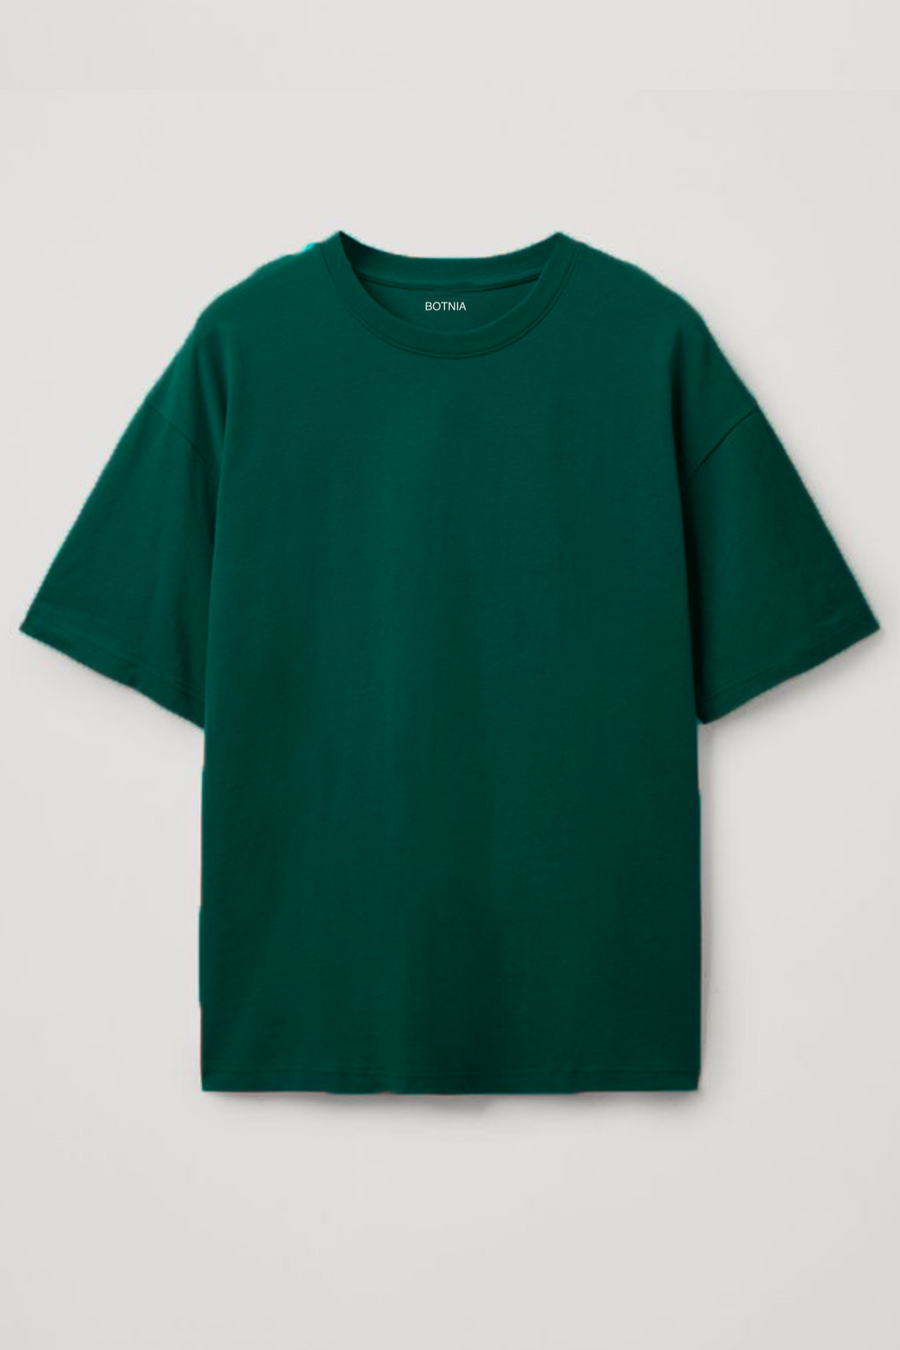 Emerald Green- Oversized t-shirt